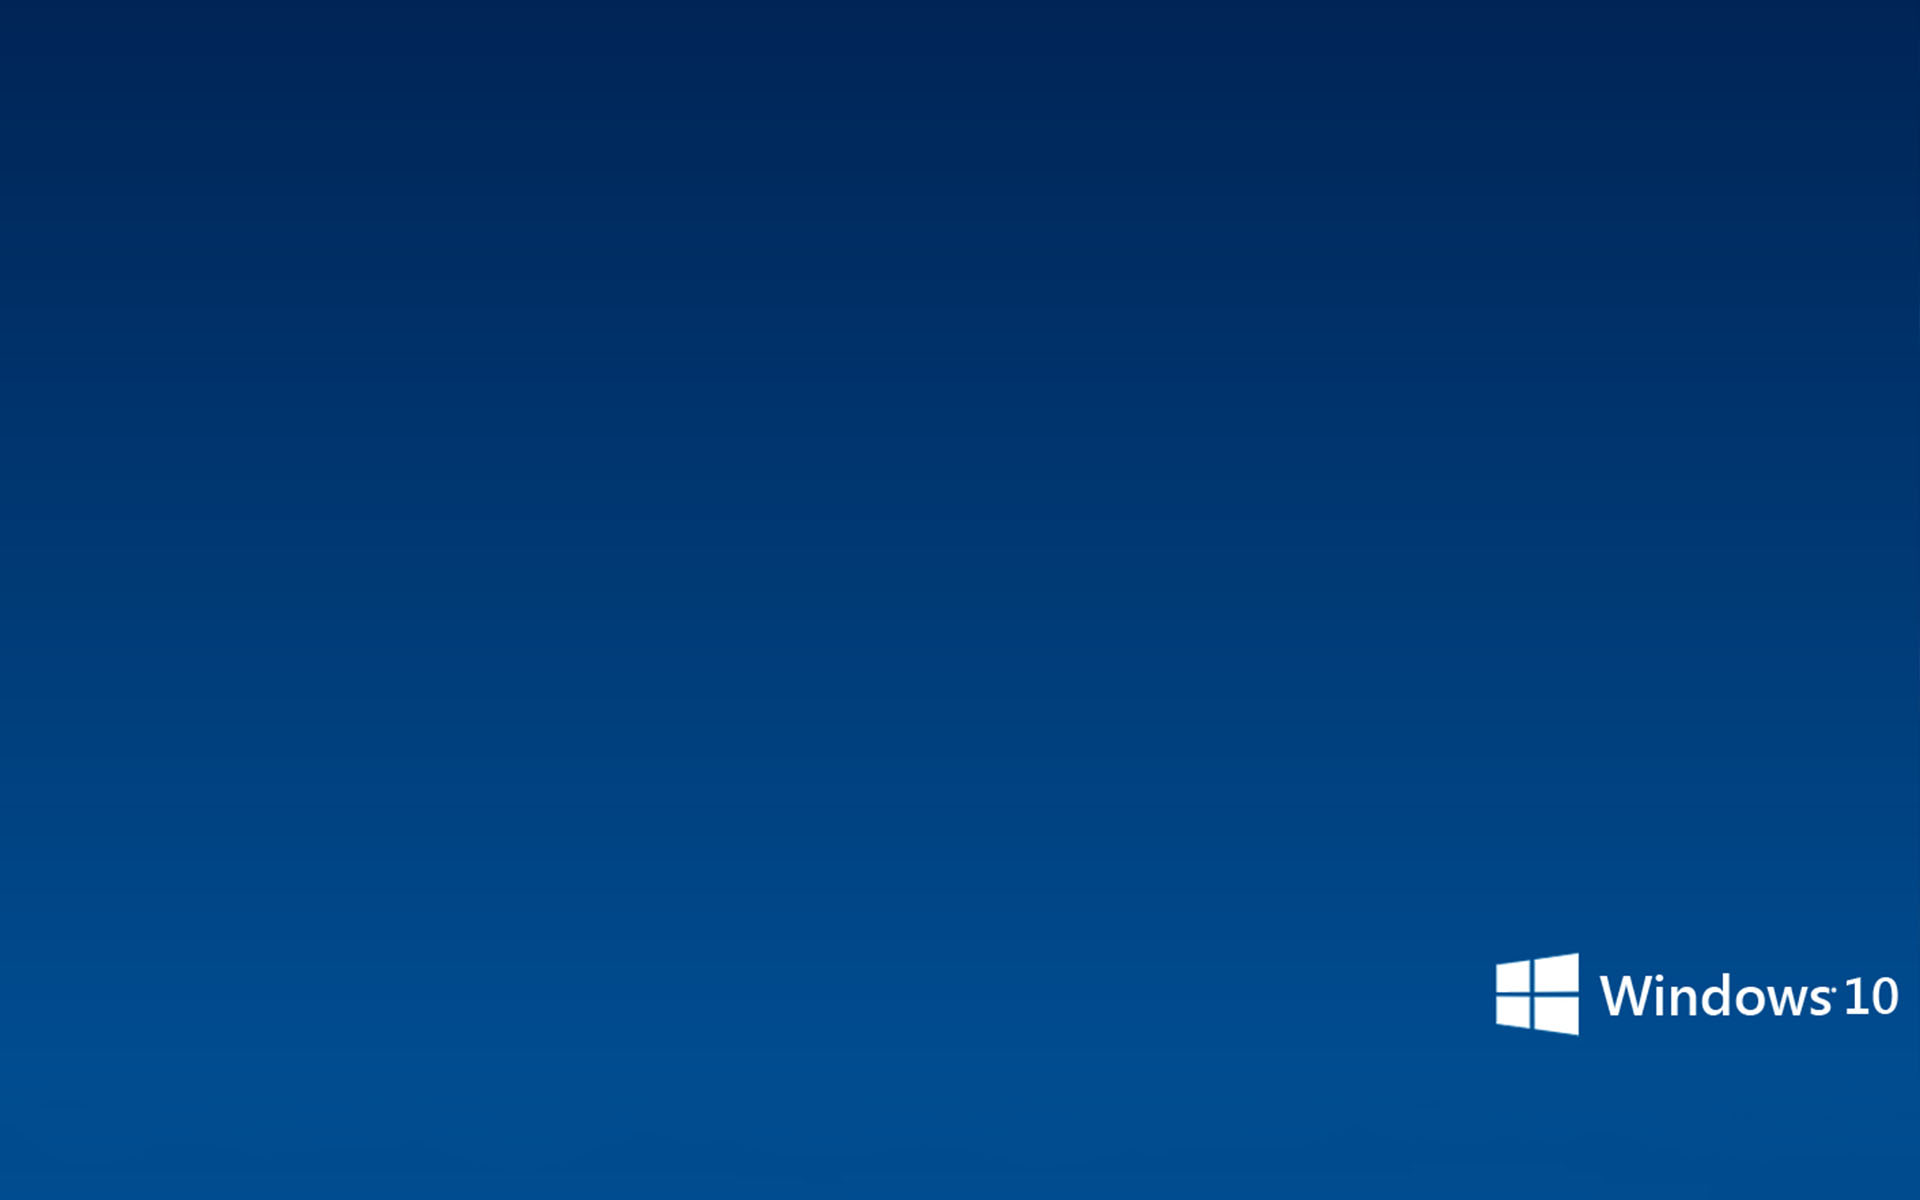 Microsoft Windows 10 Wallpapers - WallpaperSafari